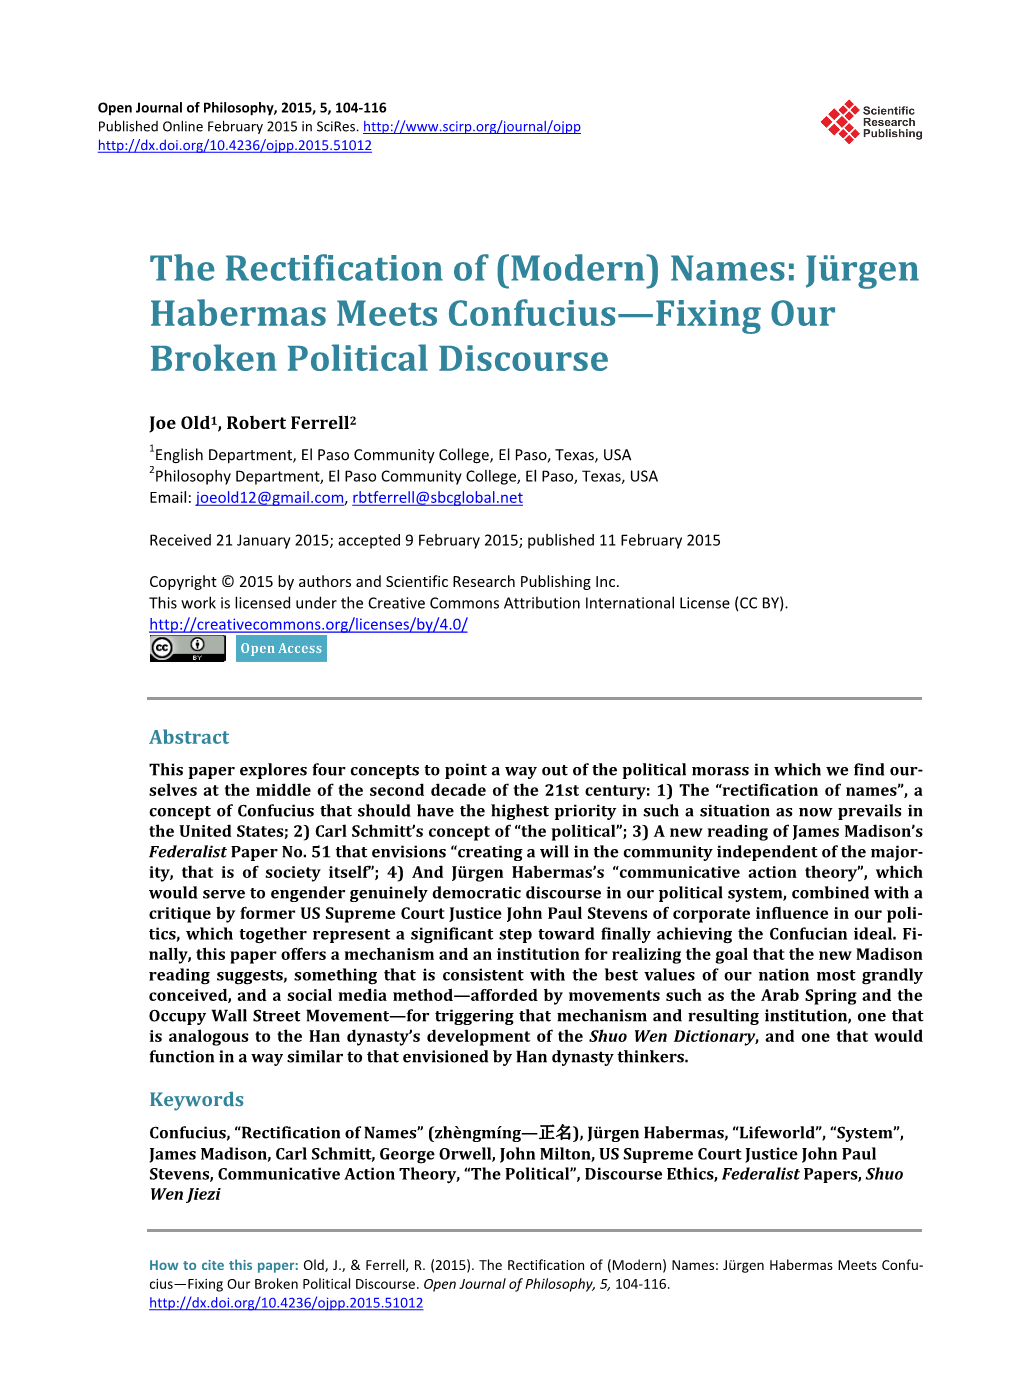 Names: Jürgen Habermas Meets Confucius—Fixing Our Broken Political Discourse